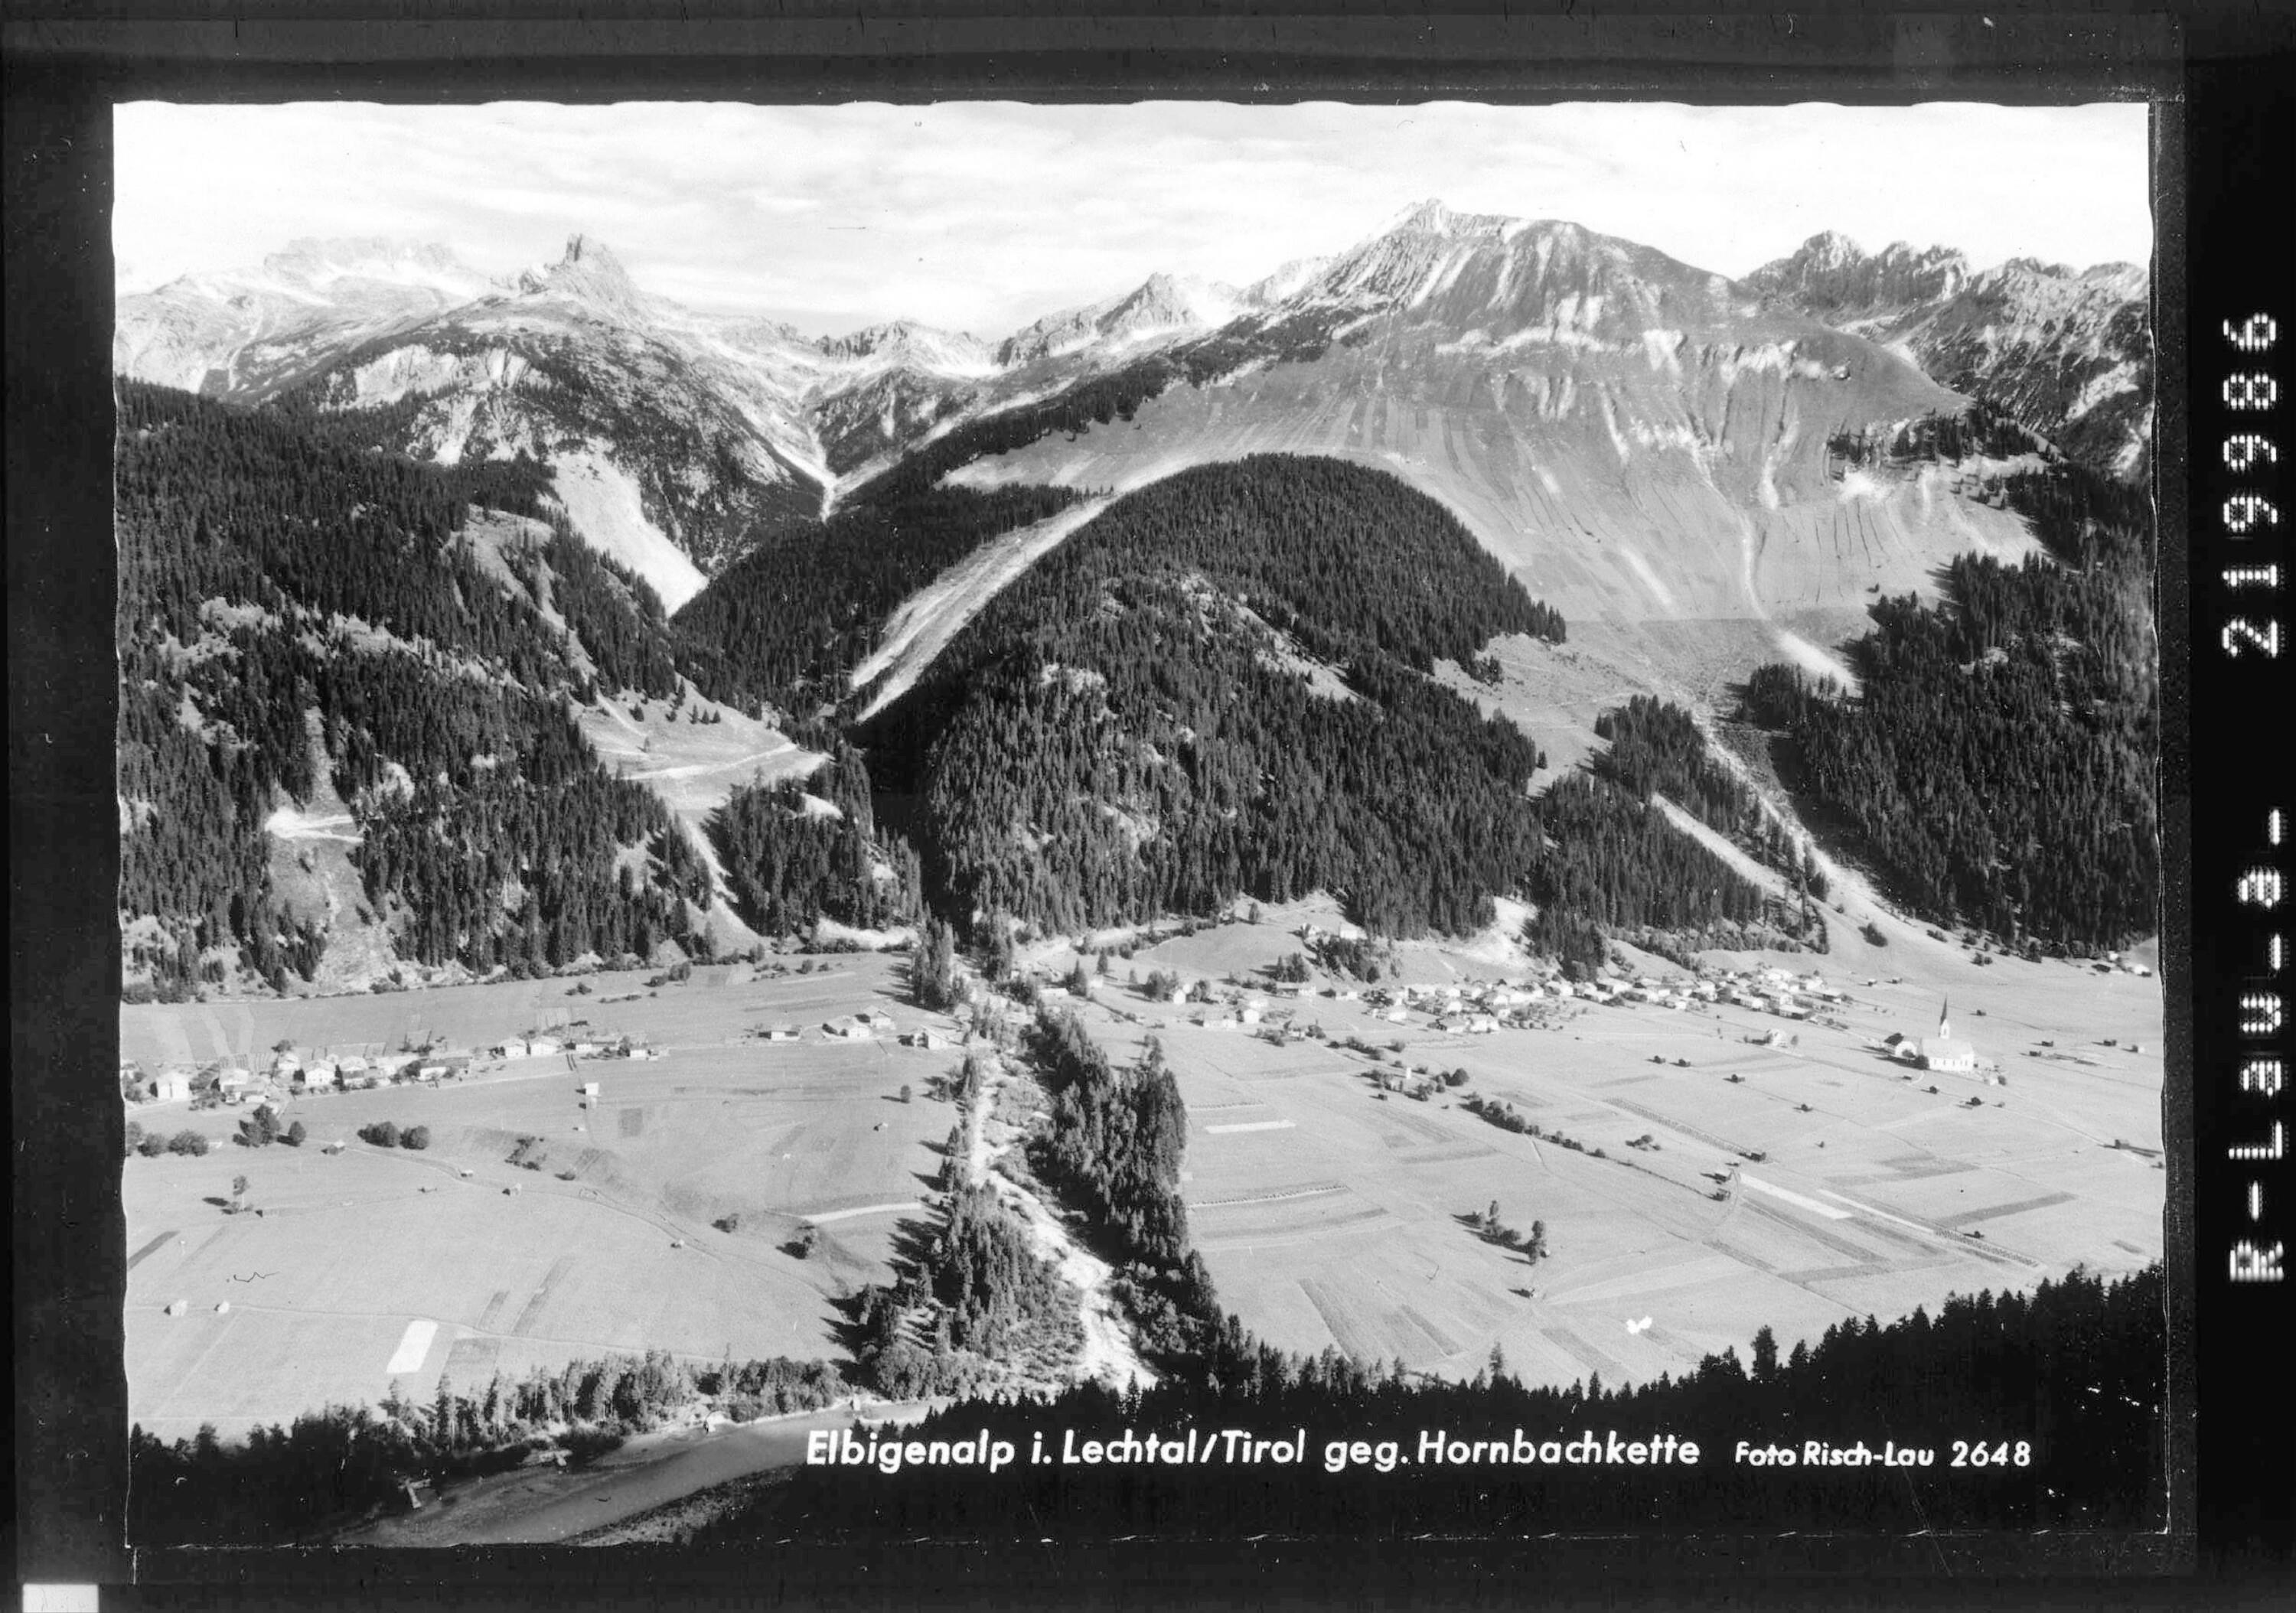 Elbigenalp im Lechtal in Tirol gegen Hornbachkette></div>


    <hr>
    <div class=